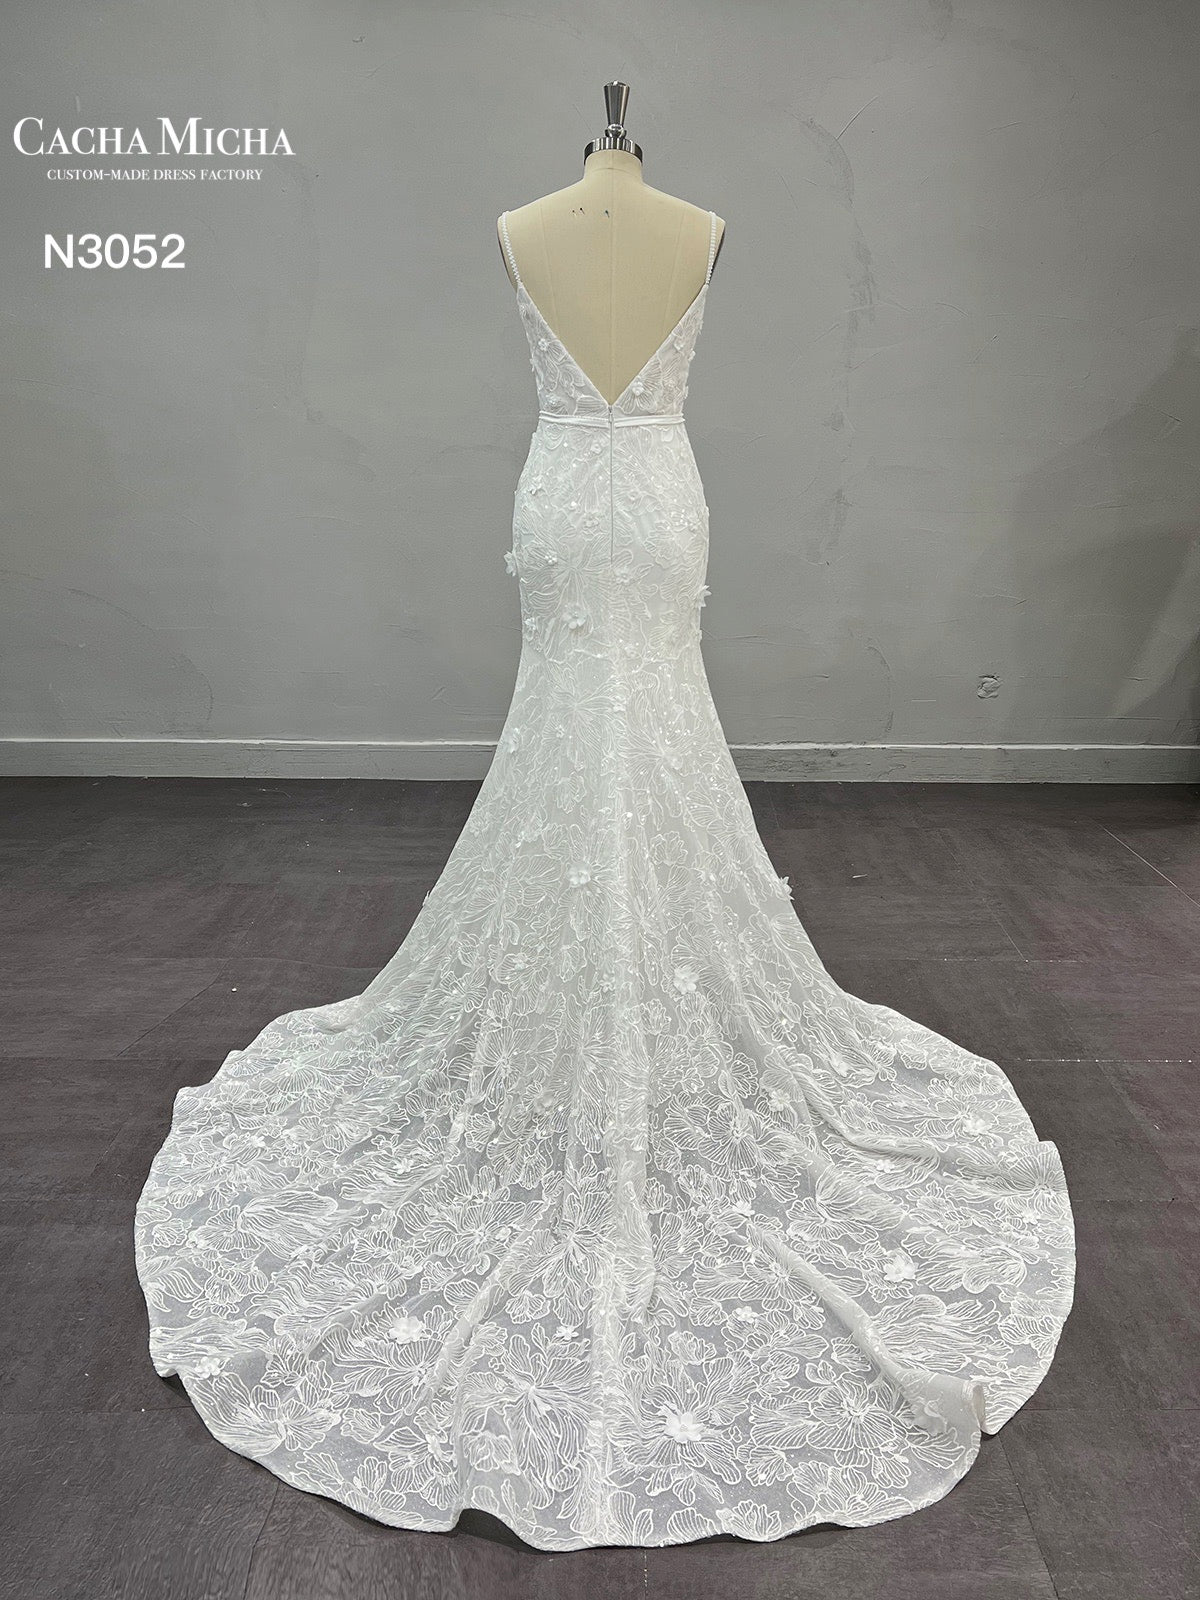 3D Flowers Square Neckline Lace Wedding Dress N3052